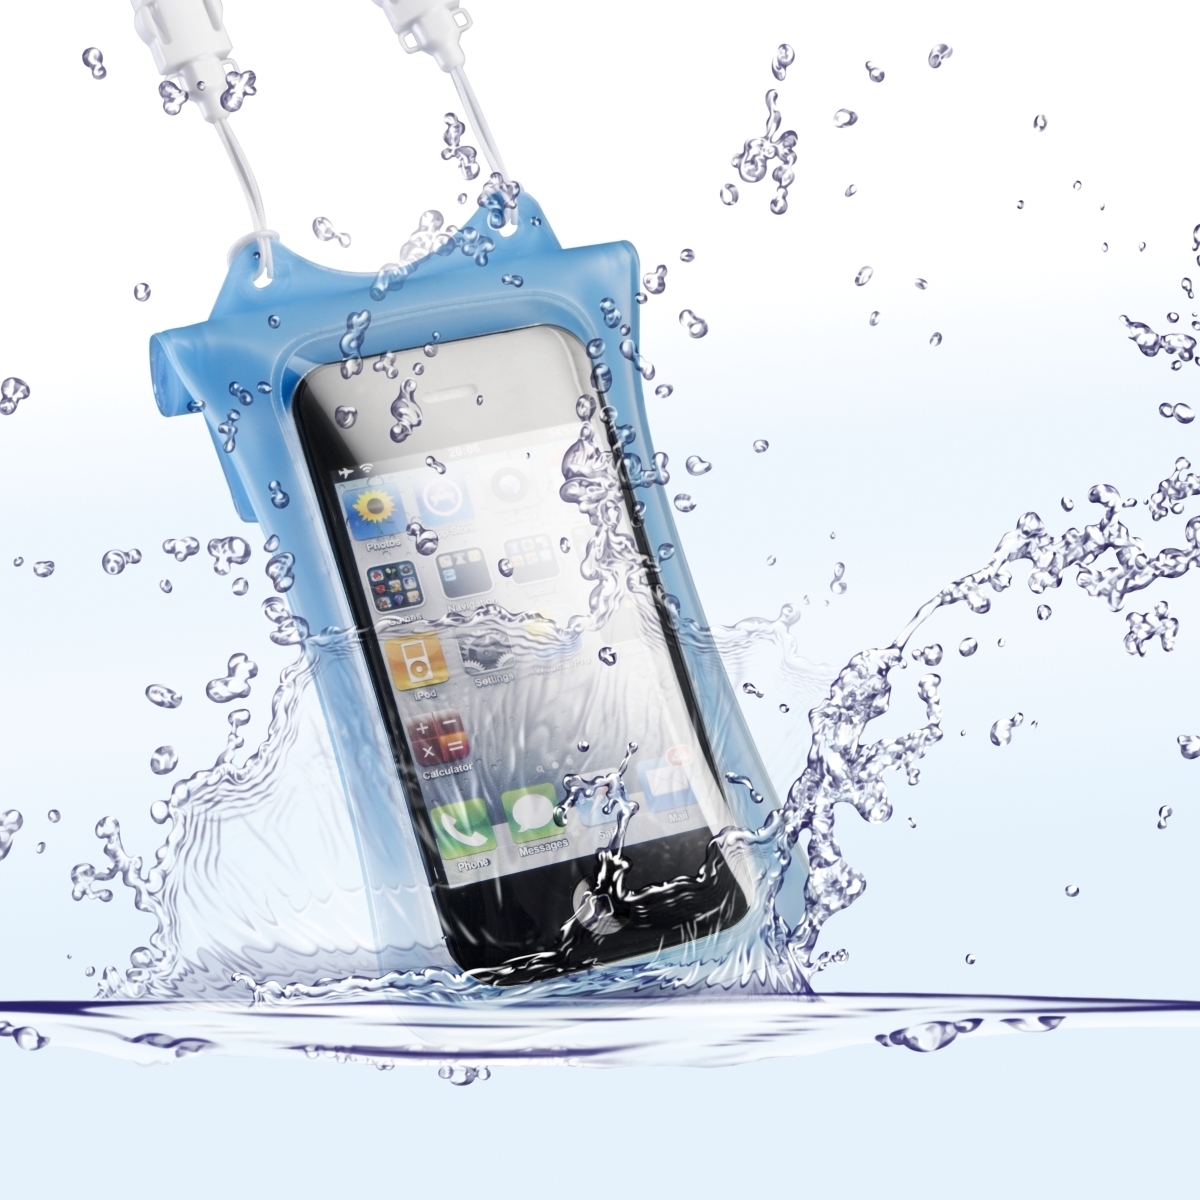 DiCAPac WP-i10 Unterwassertasche iPhone blau